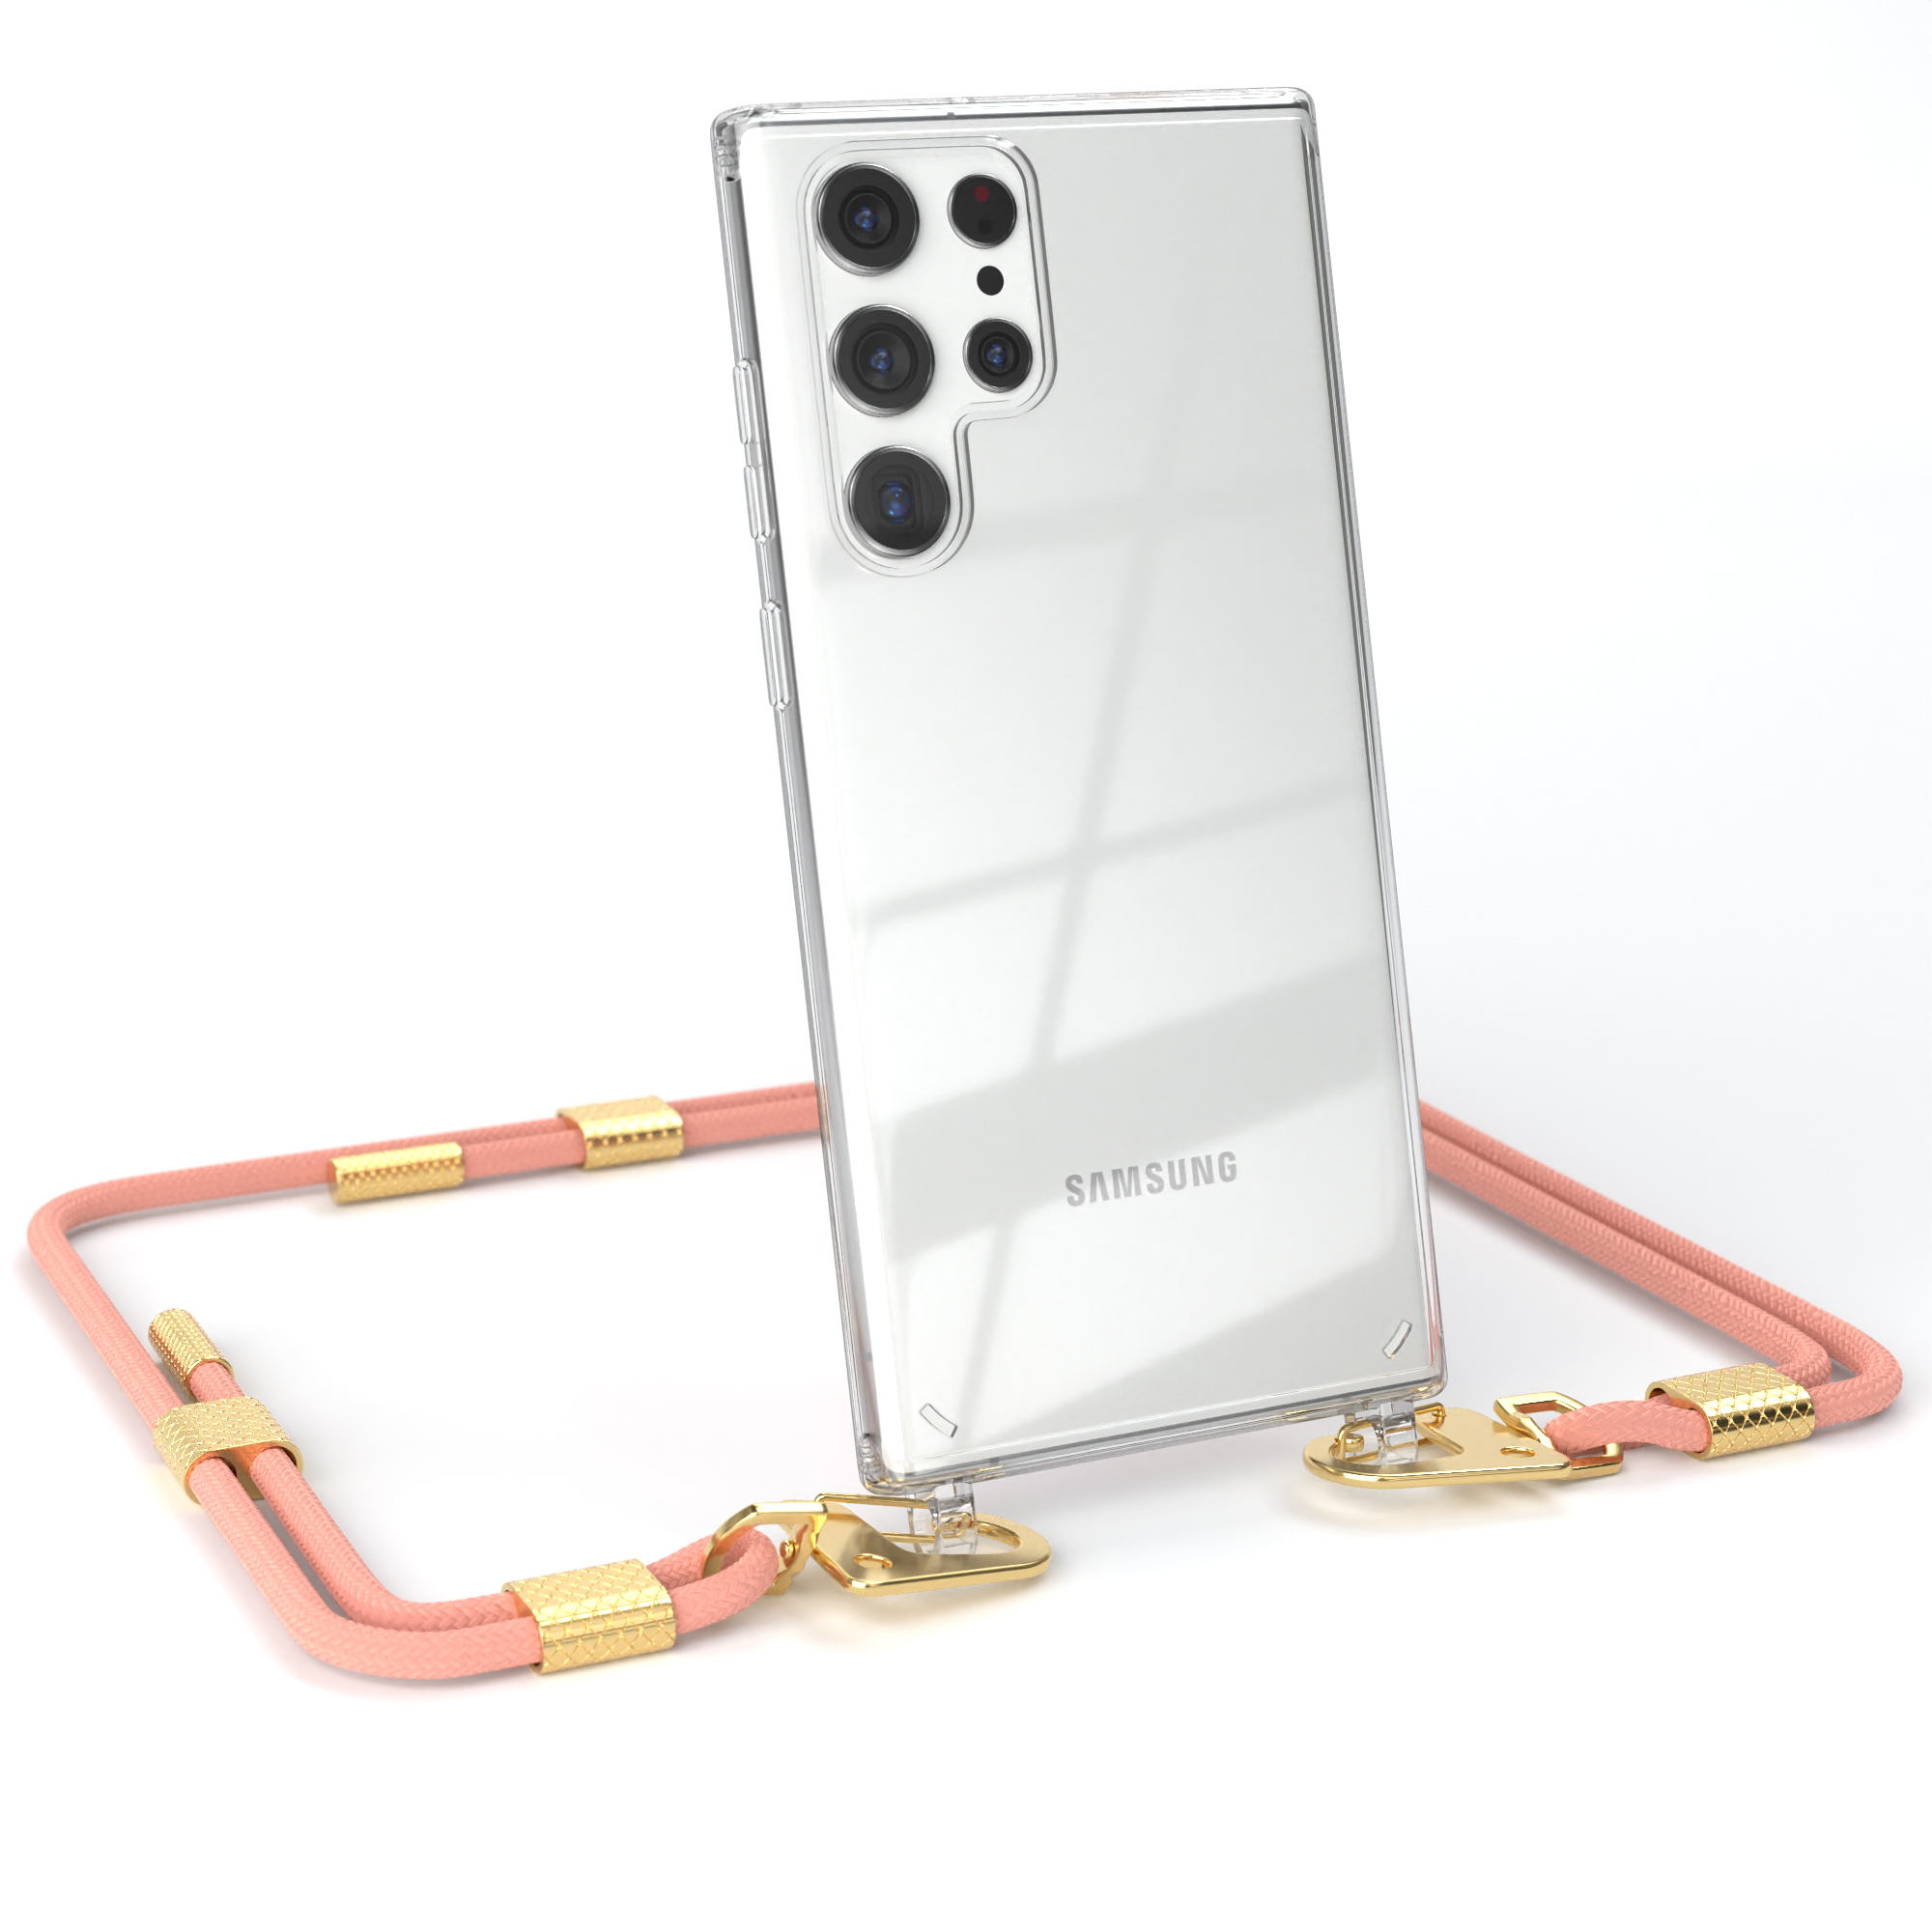 / Ultra + Handyhülle Altrosa CASE Samsung, Gold Umhängetasche, Kordel S22 runder Galaxy EAZY Transparente mit 5G, Karabiner,